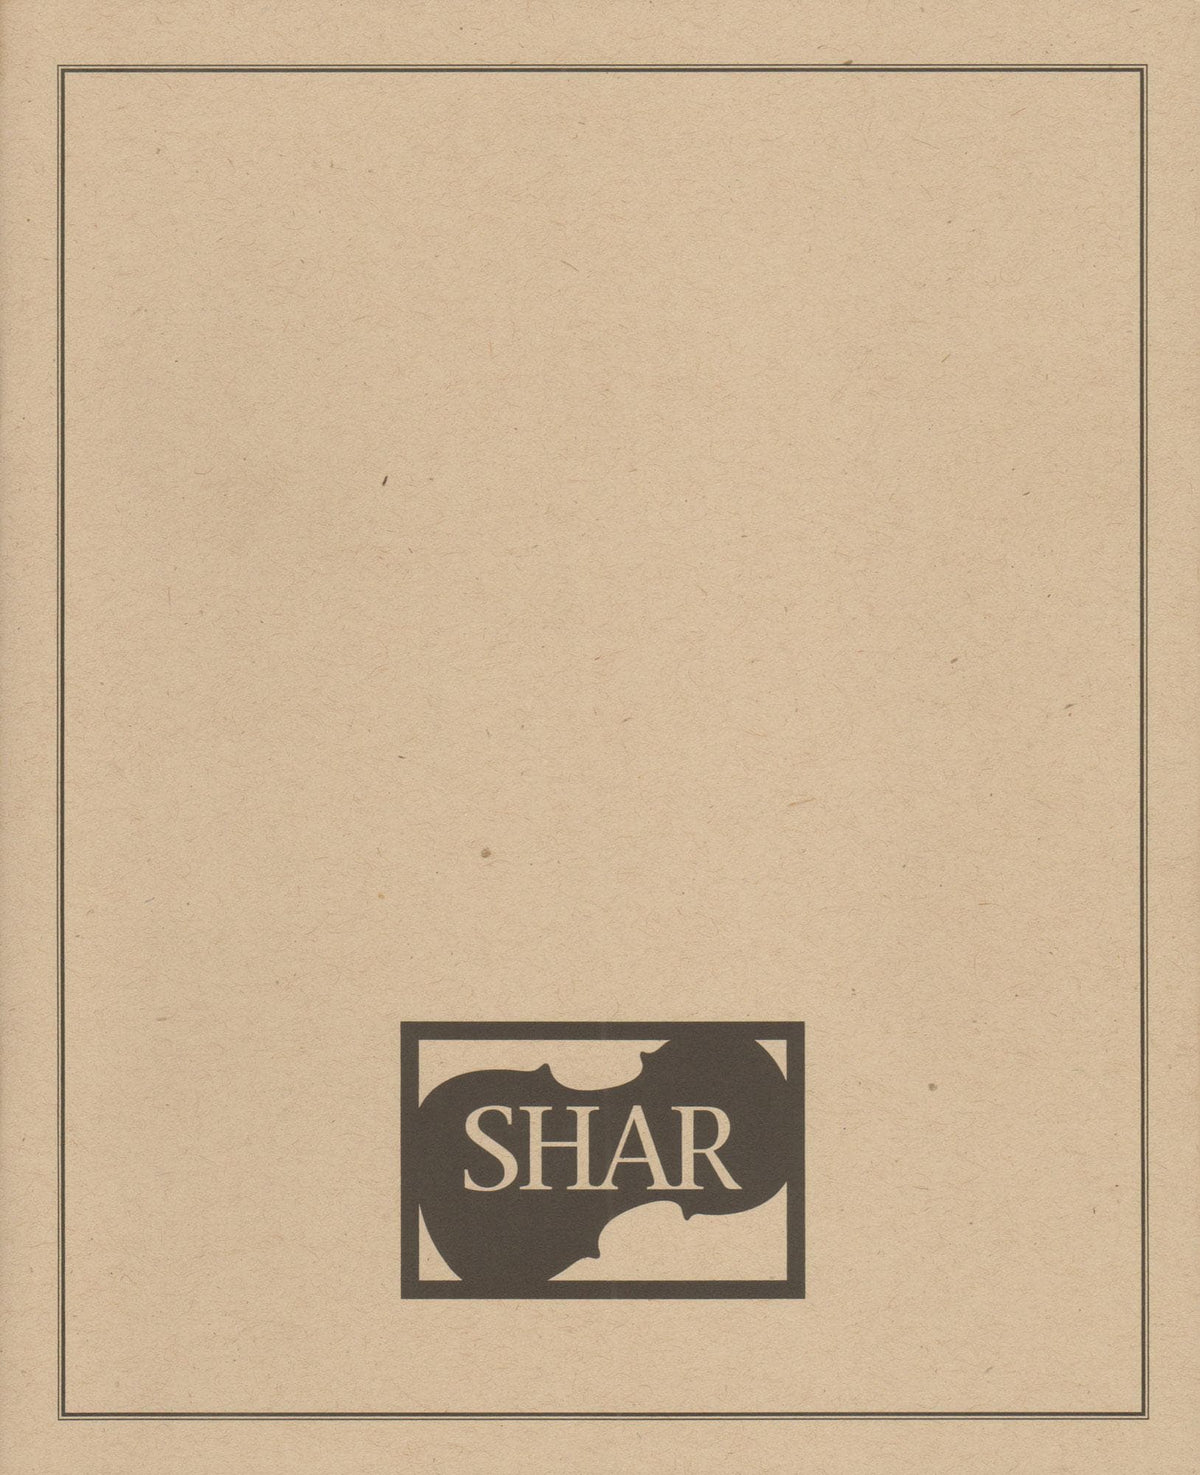 The Little Shar Score Book